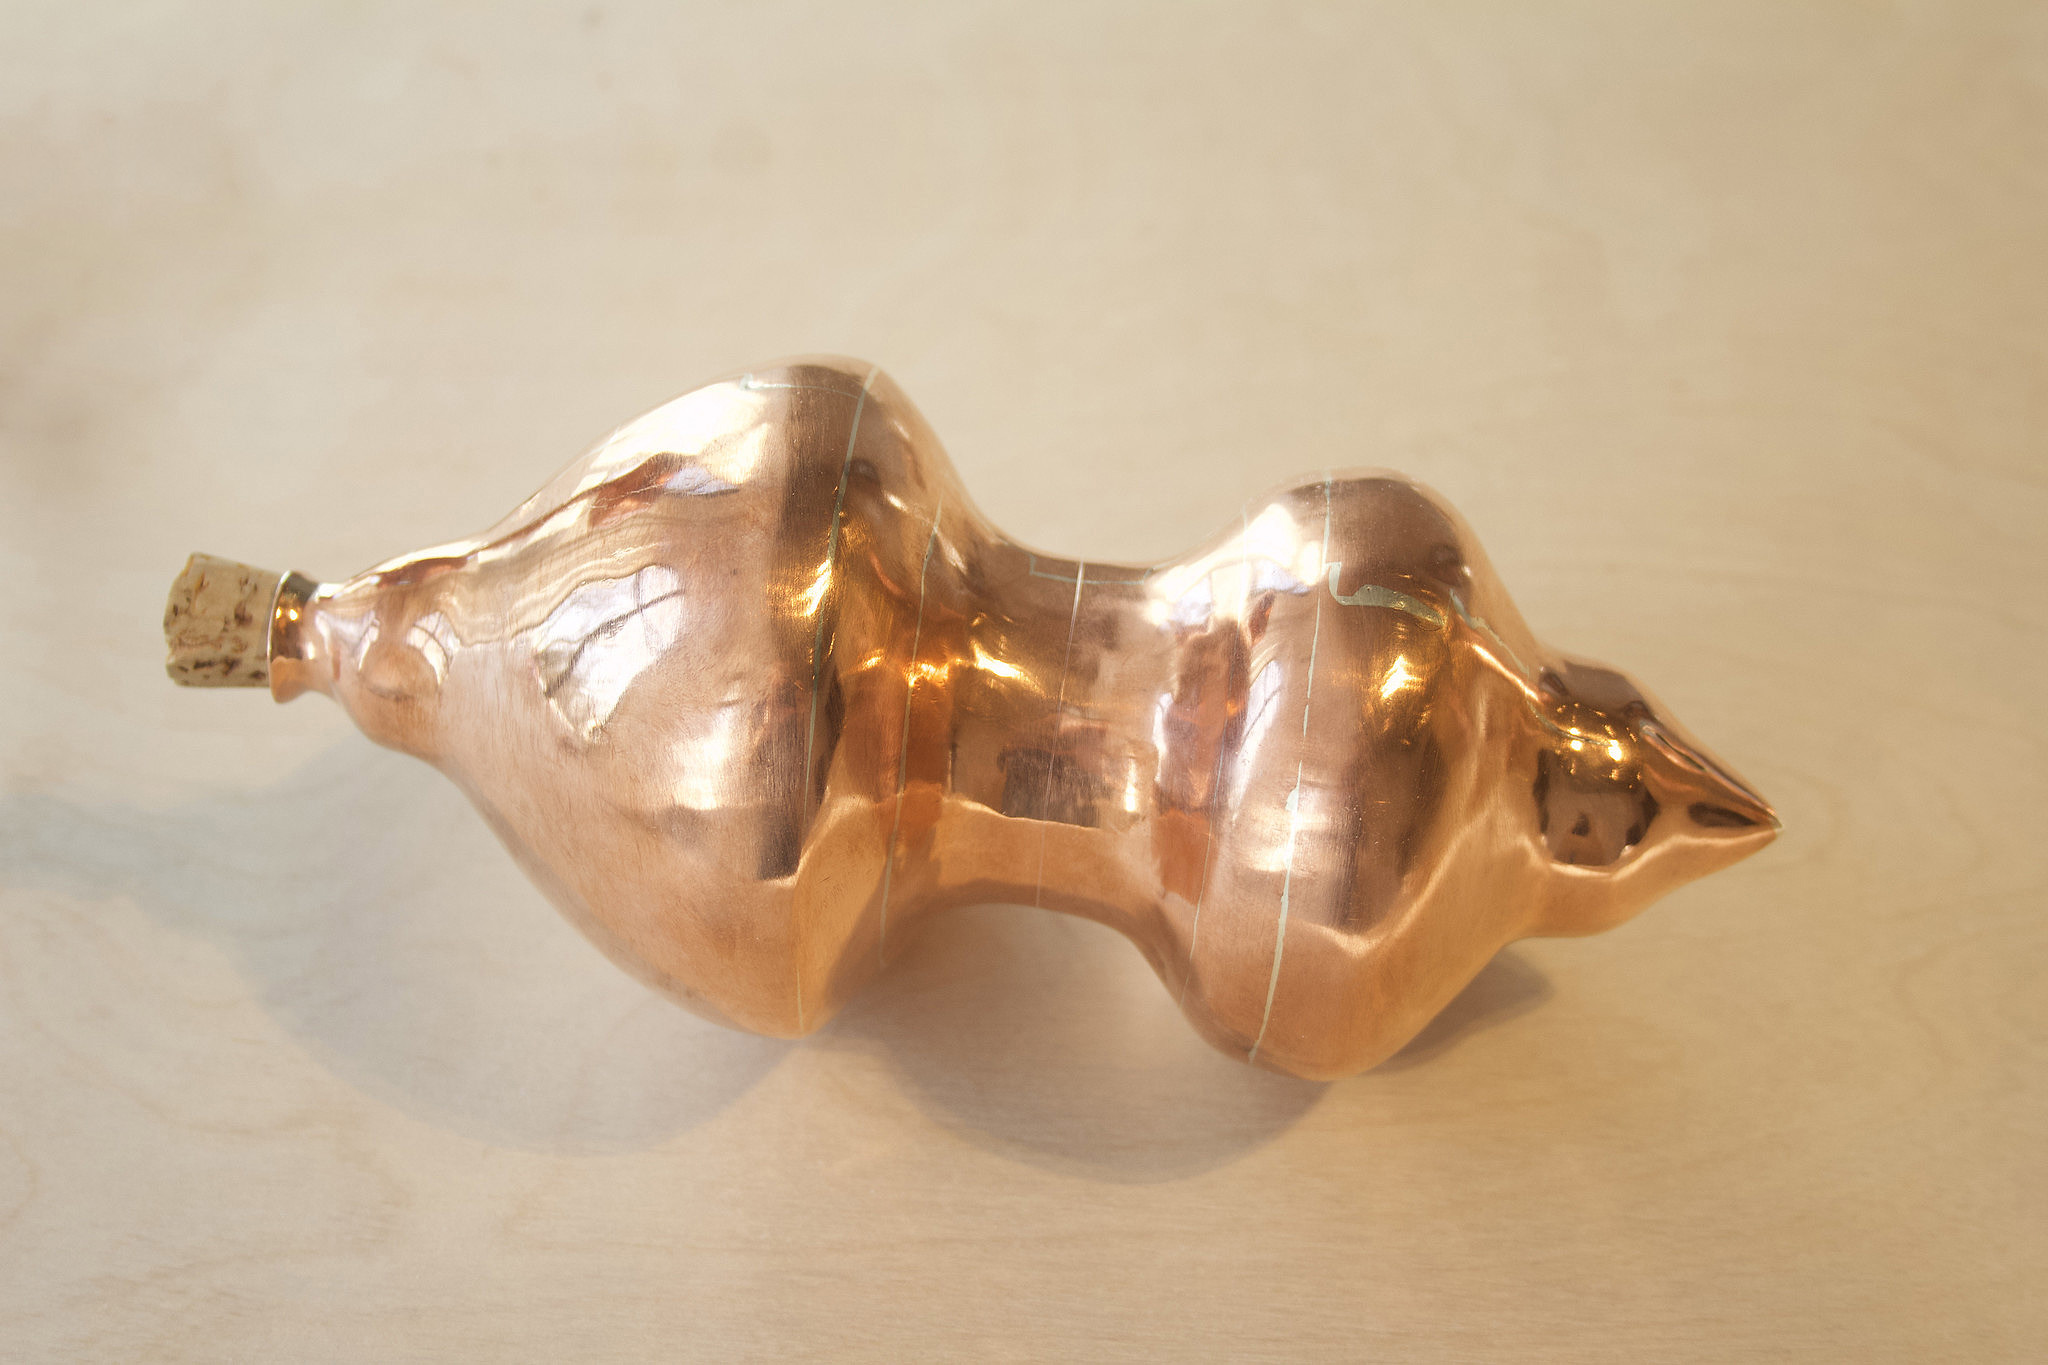 uniquely shaped copper vessl